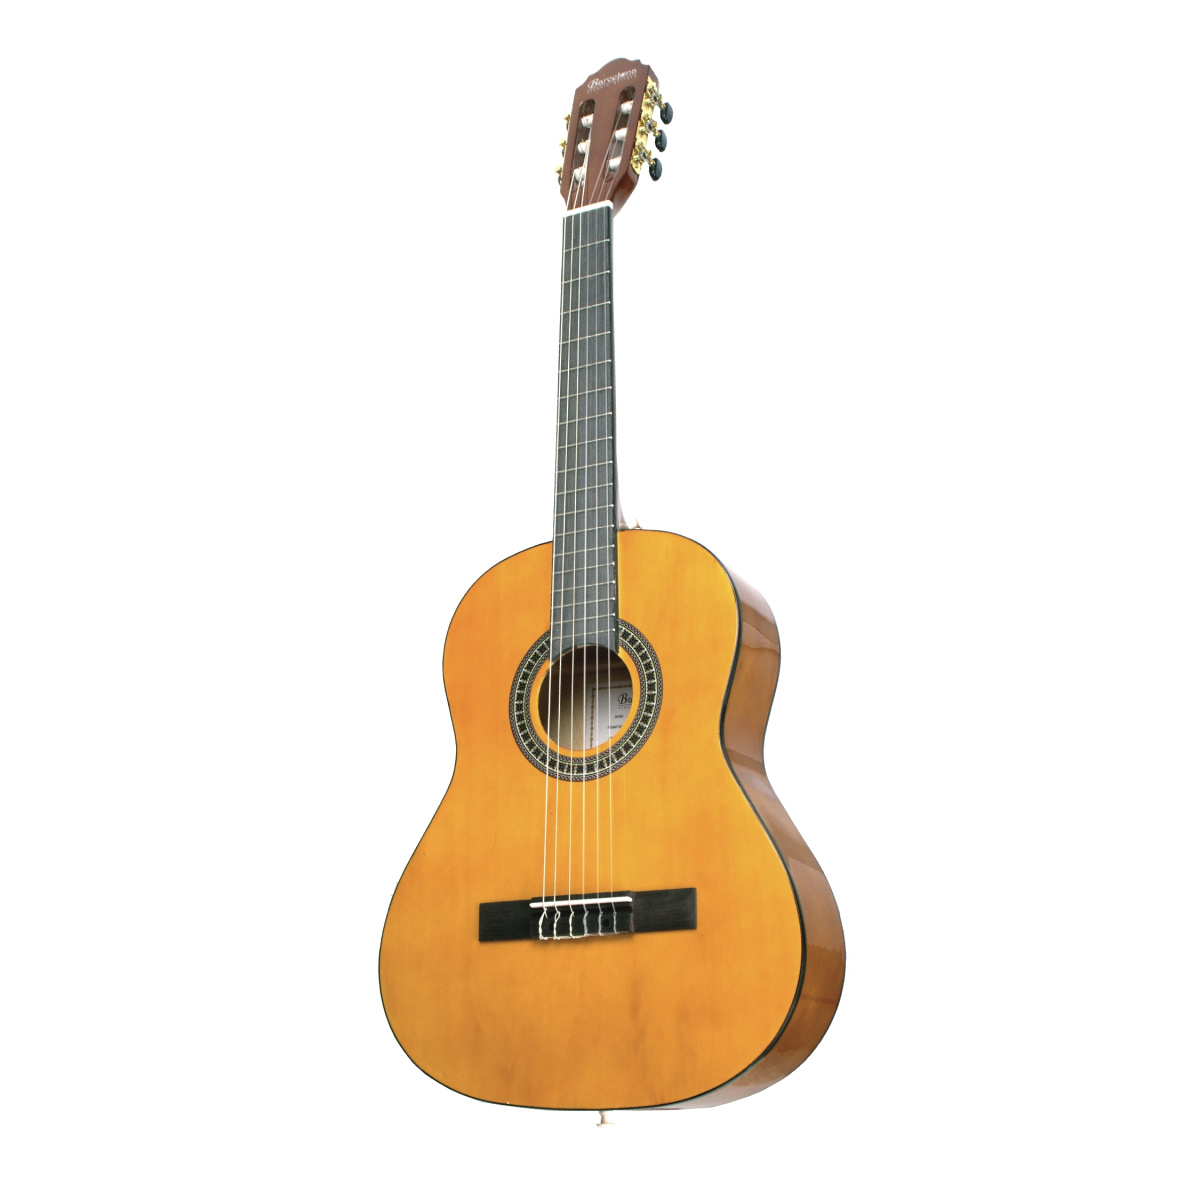 BARCELONA CG6 3/4 - классическая гитара, размер 3/4, анкер купить в prostore.me